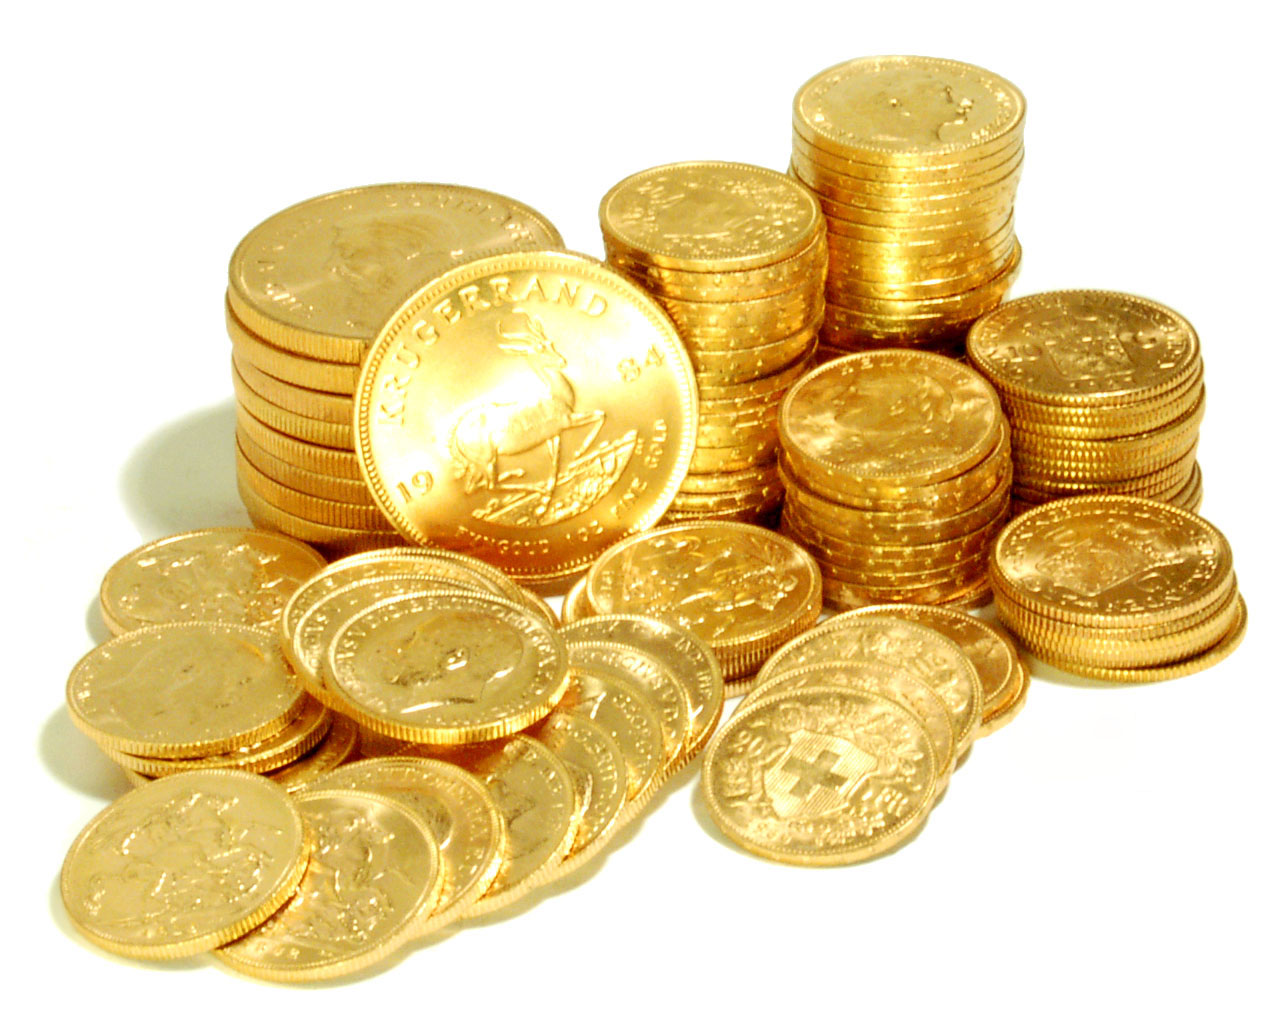 نرخ دلار به بالاترین رقم رسید/ طلا و سکه گران شد